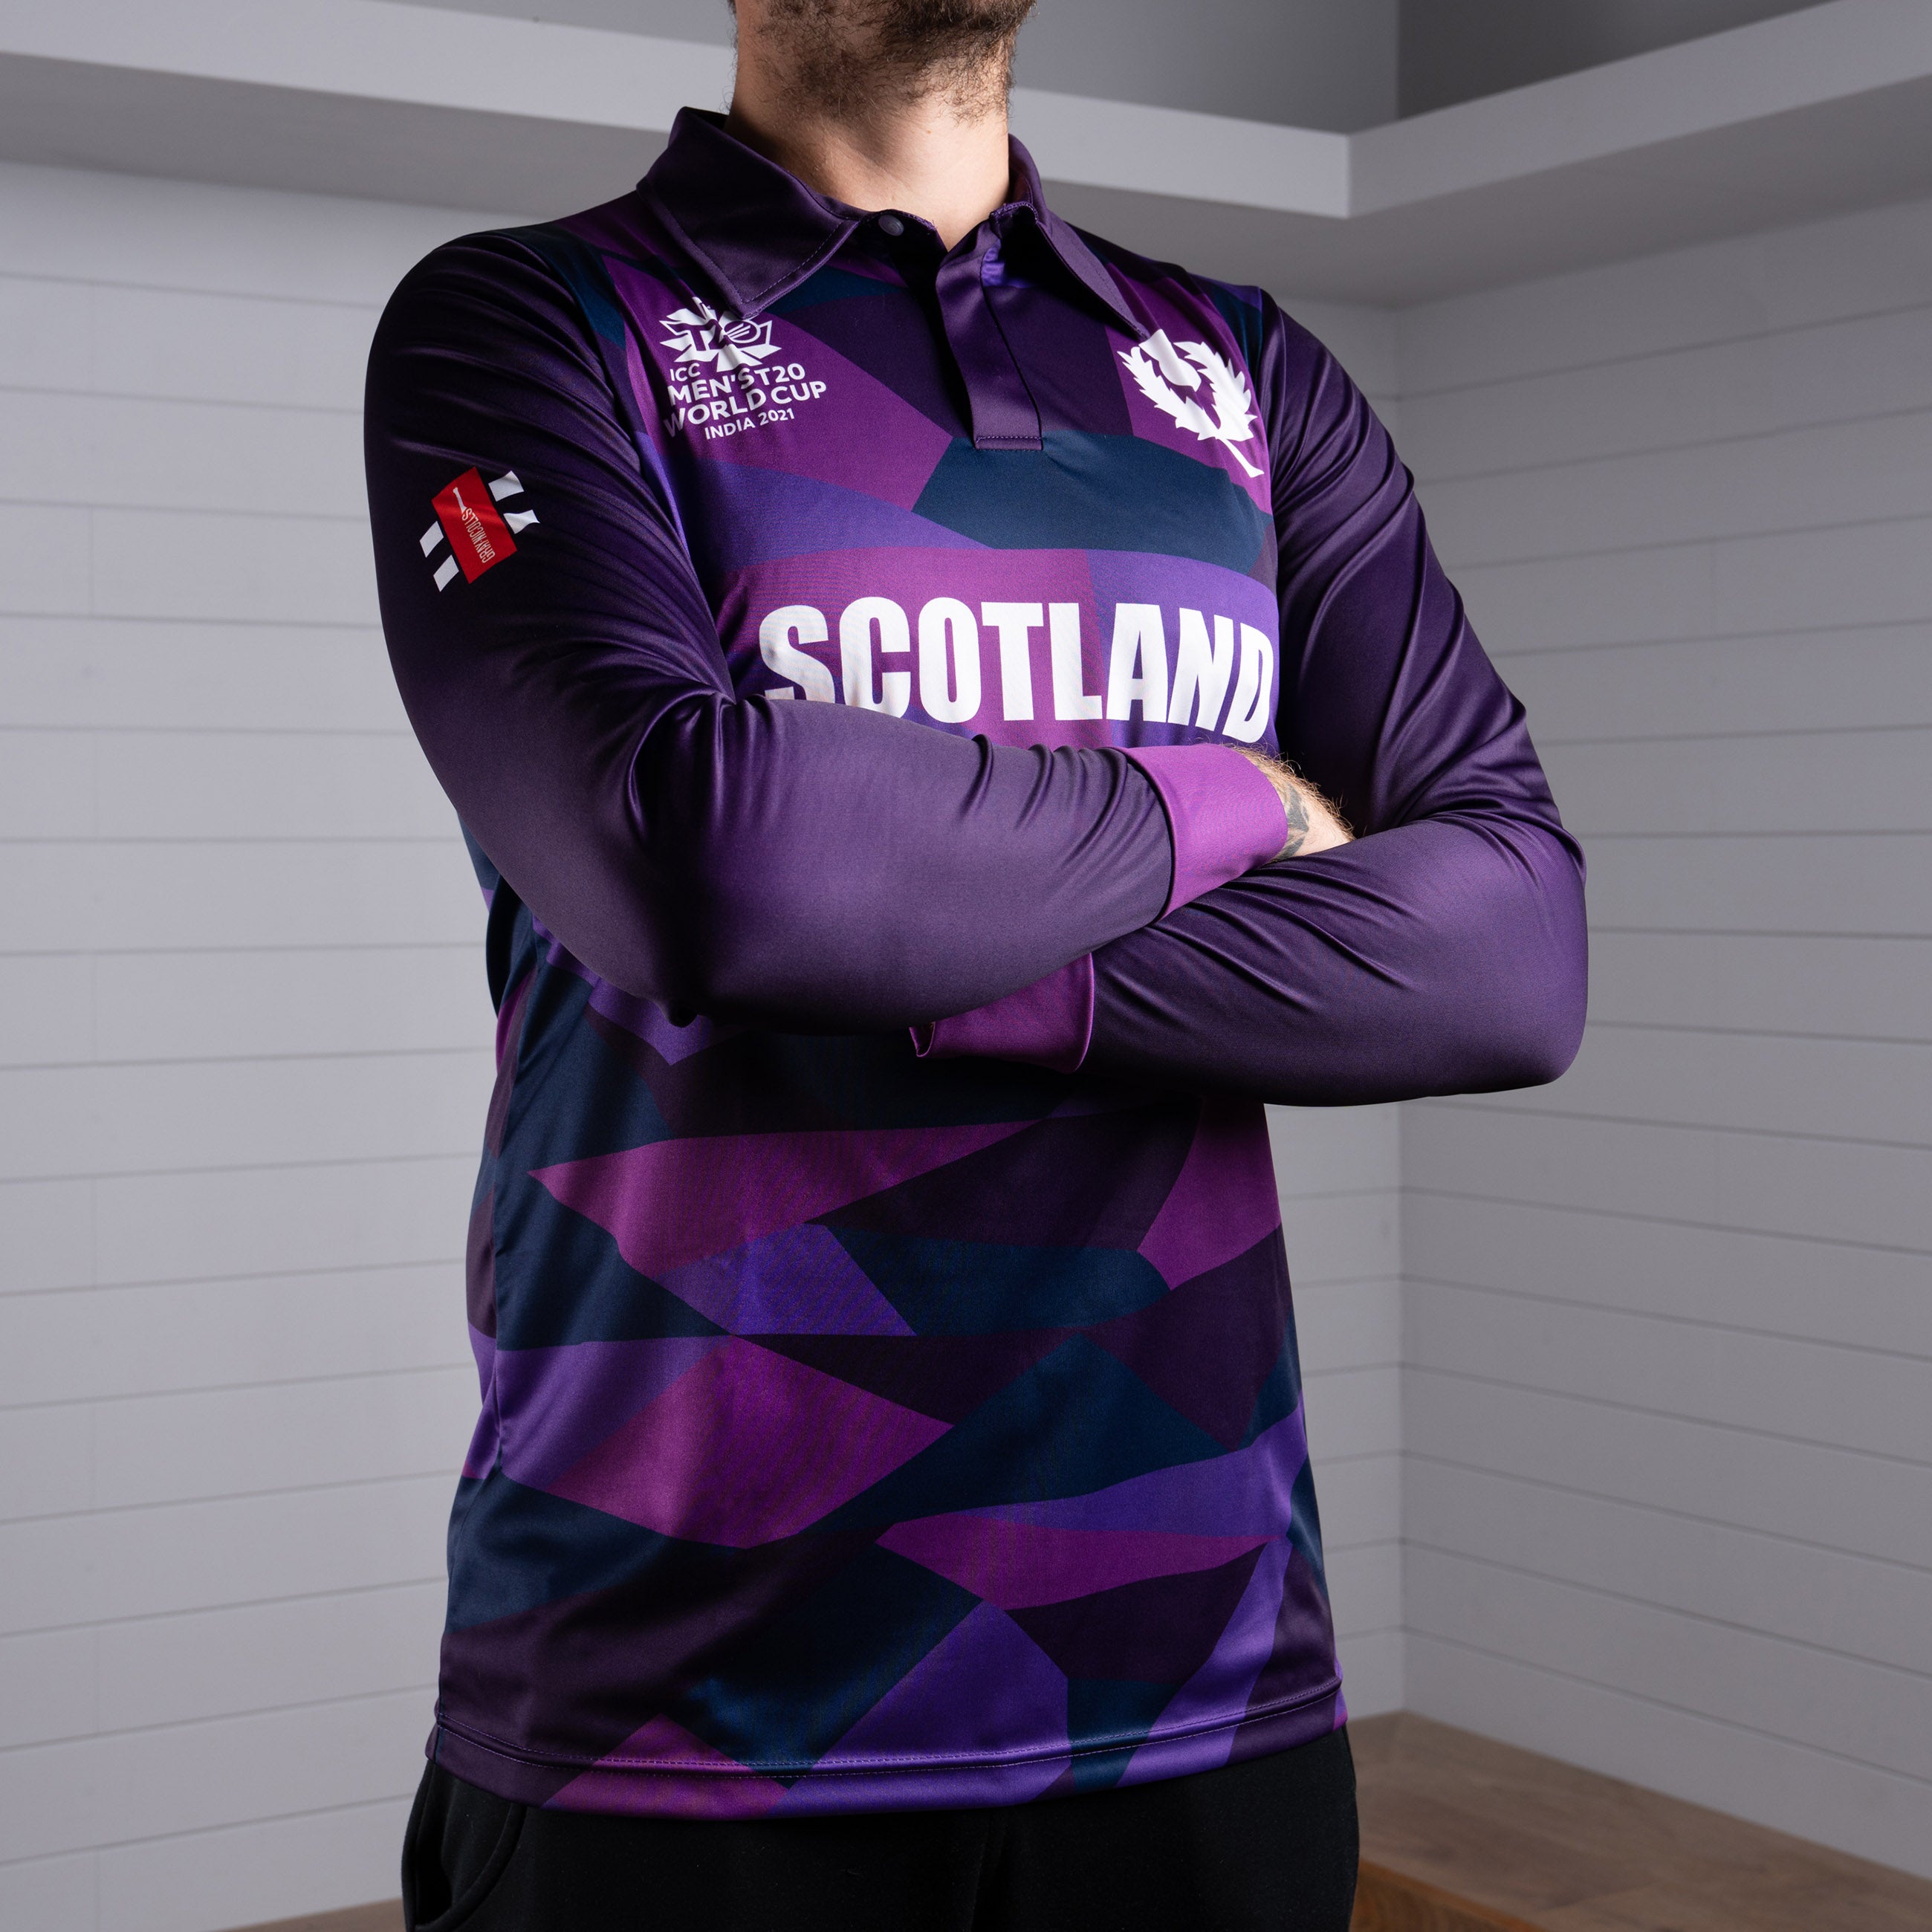 Cricket Scotland T20 World Cup Long Sleeve Shirt - Men's